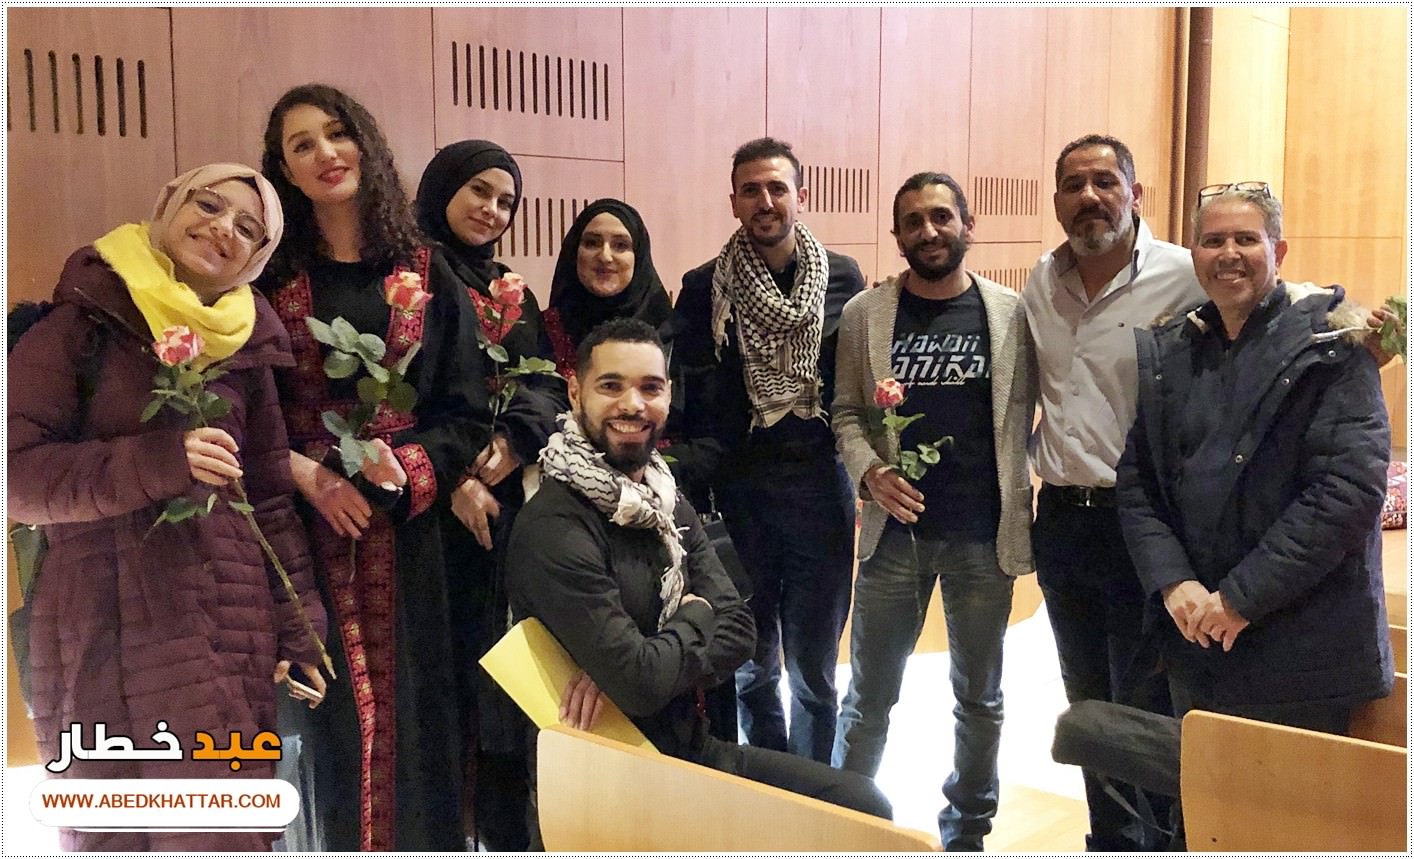  فرقة دارنا للتراث  الفلسطيني | المانيا تشارك في افتتاح معرض حكايات المسافر - ألف ليلة وليلة بين الشرق وأوروبا